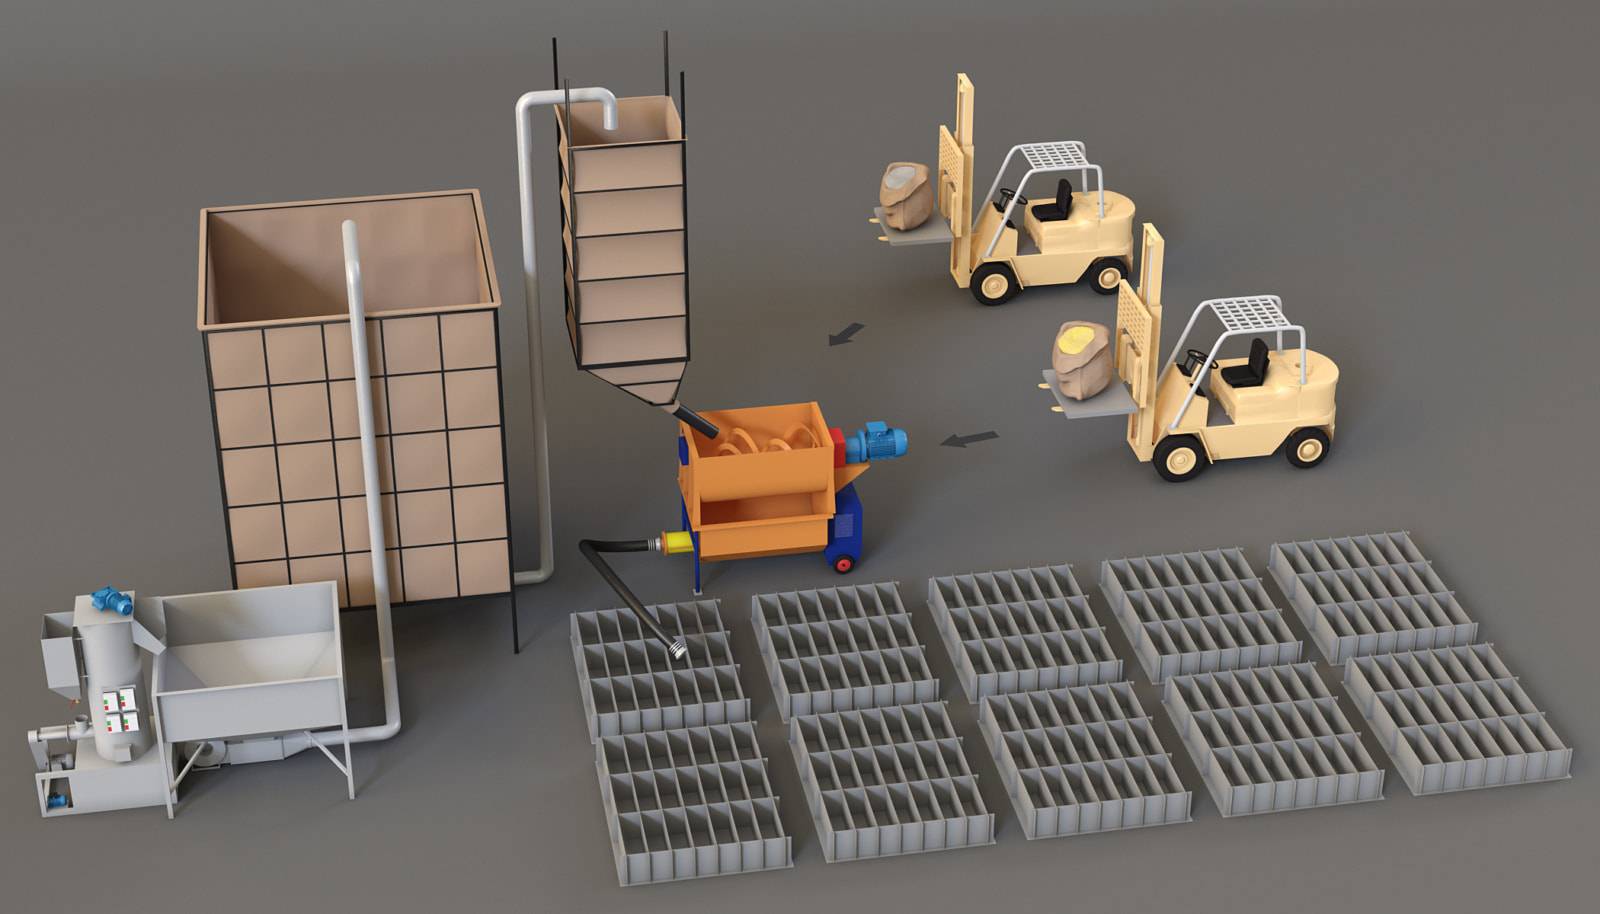 Оборудование для полистиролбетона: формы, бетономешалка, станки и другая техника для производства полистиролбетонных блоков, а также ее стоимость